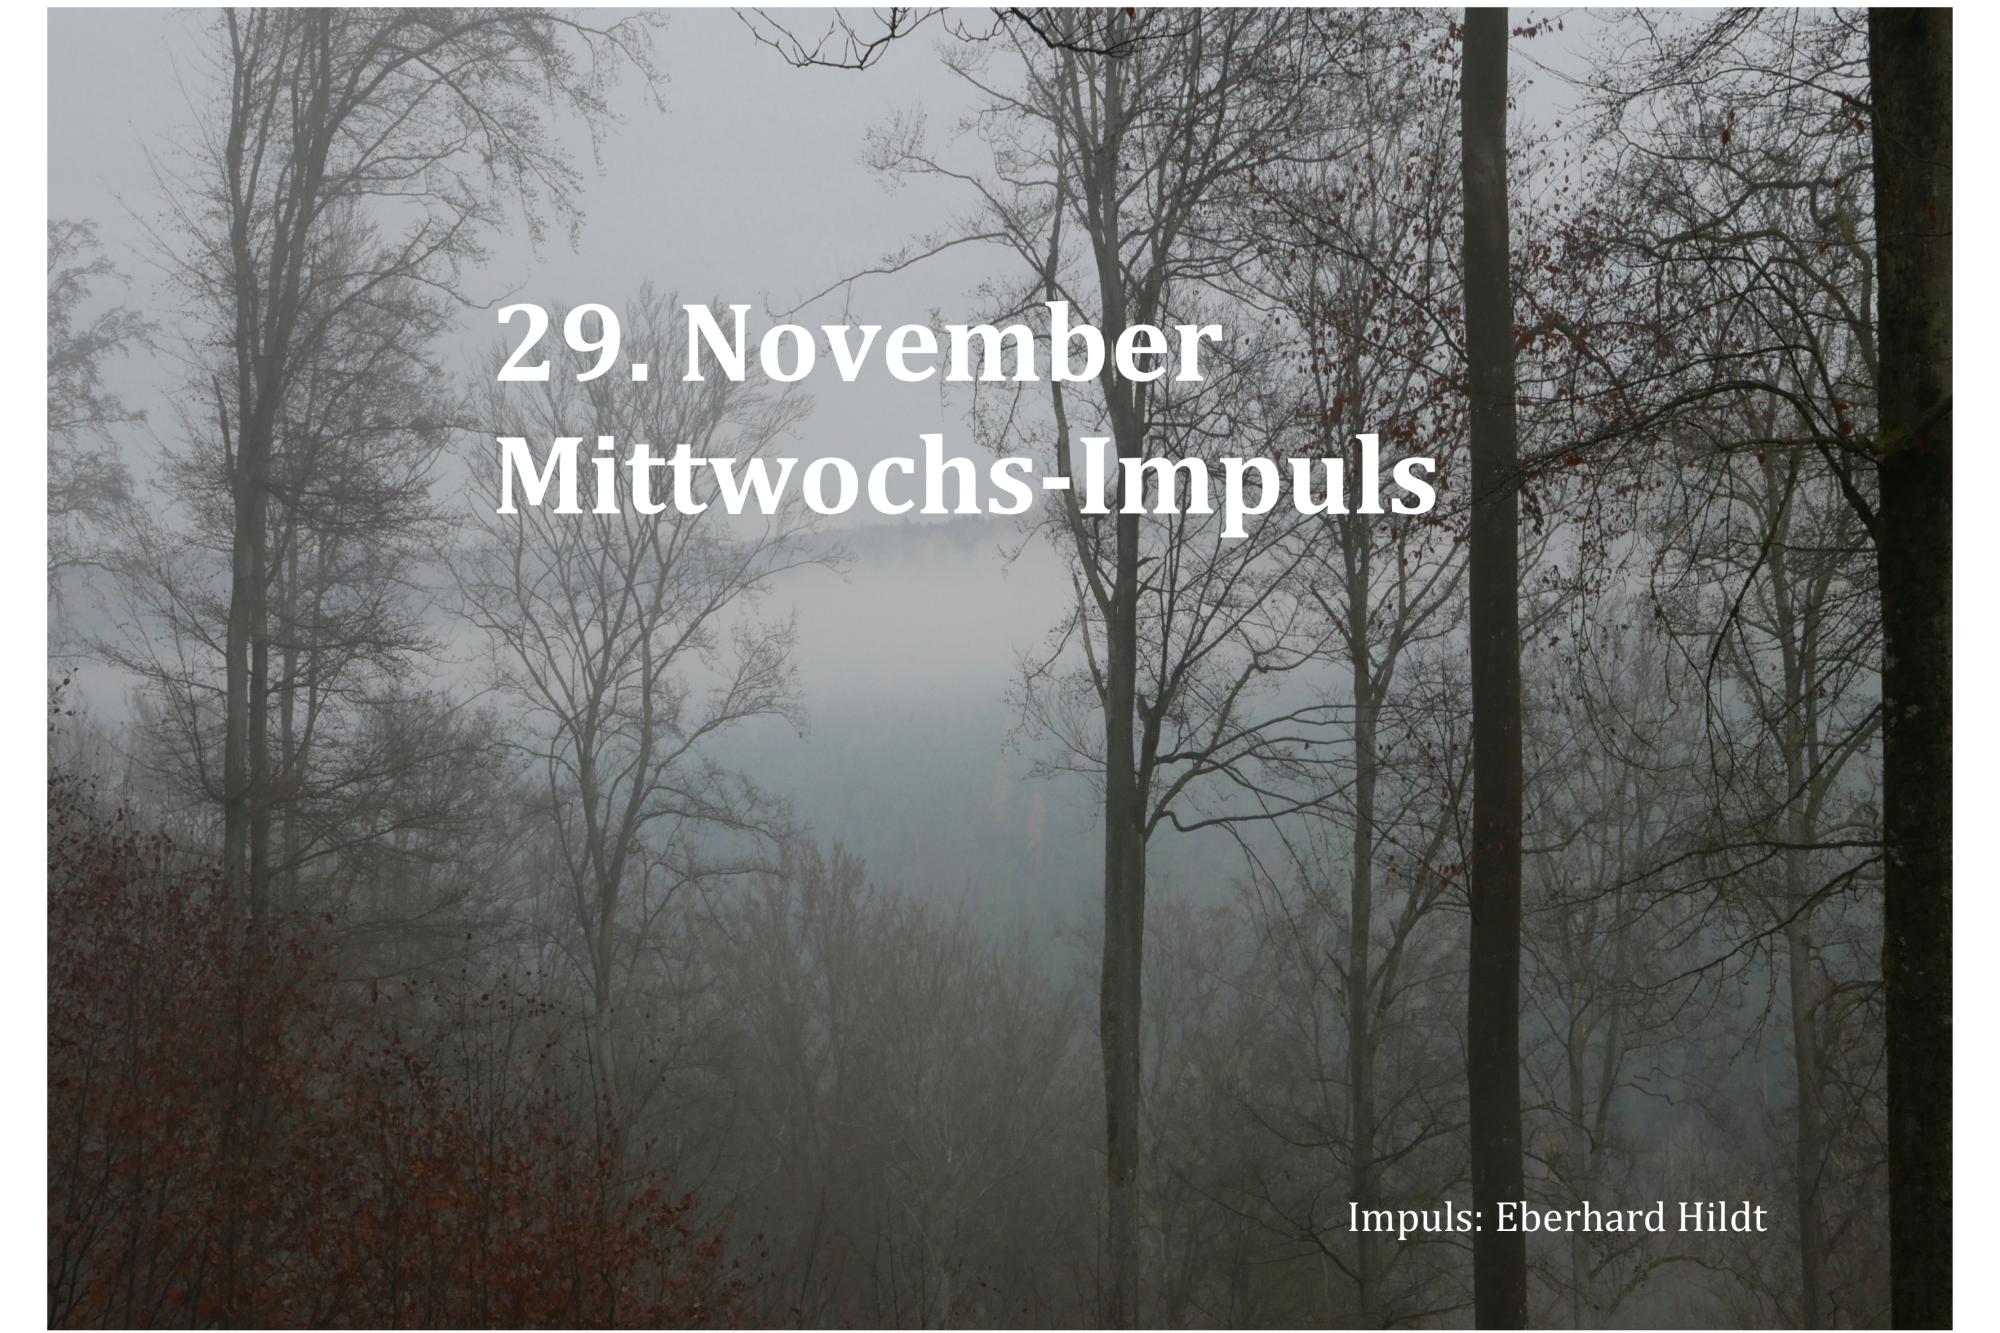 2023_29_November_Mittwochs-Impuls (c) Gesitliches Team, Pastoralraum Heusenstamm-Dietzenbach